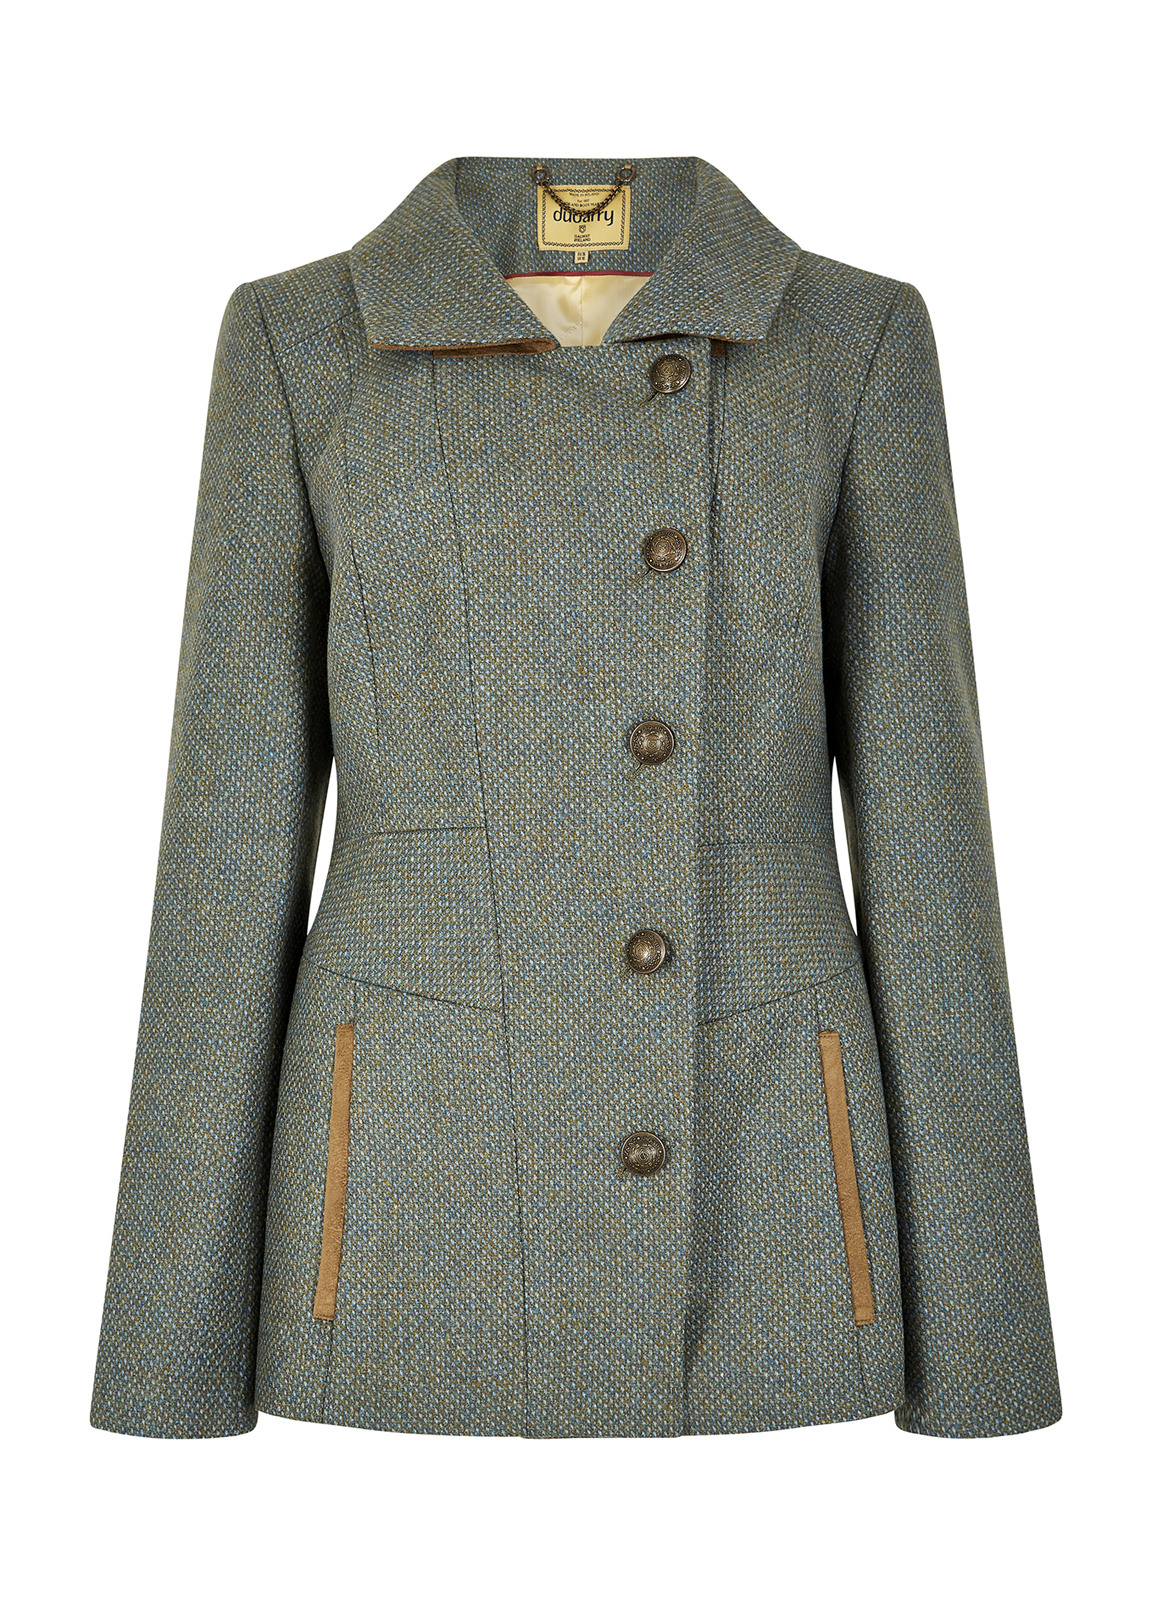 Dubarry_Moorland Tweed Jacket - Rowan_Image_2